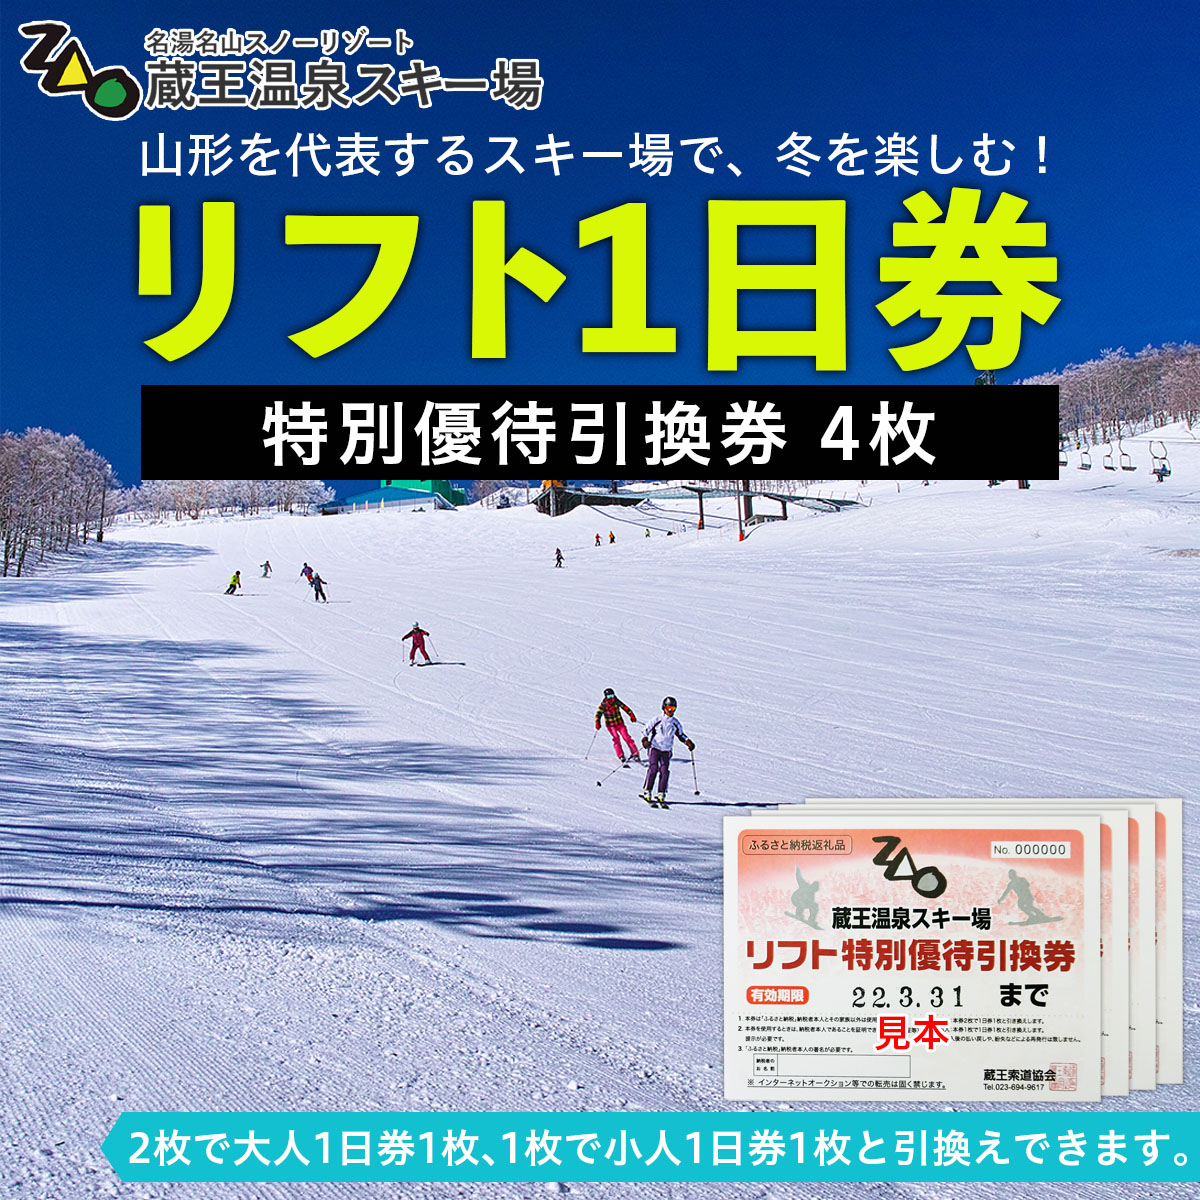 関東18スキー場 共通スキーリフト1日引換券 - スキー場